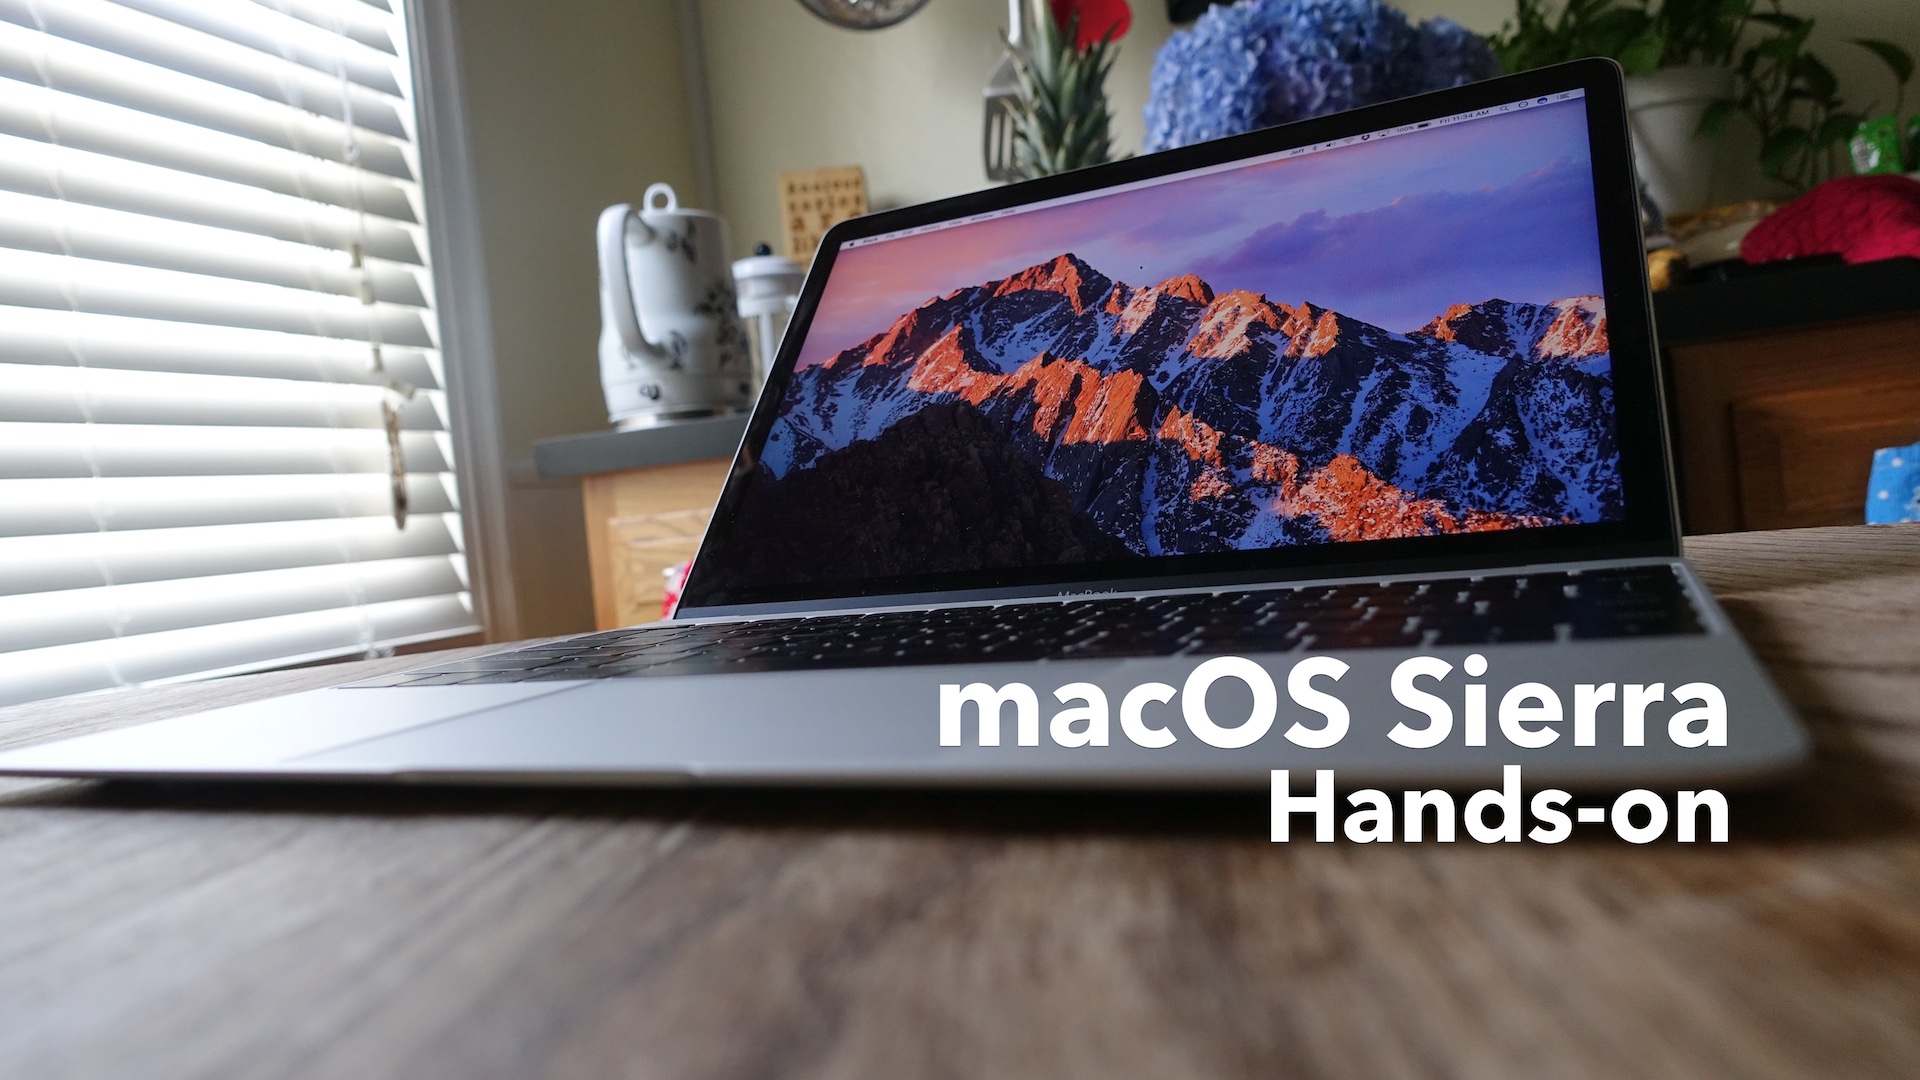 macOS Sierra hands-on